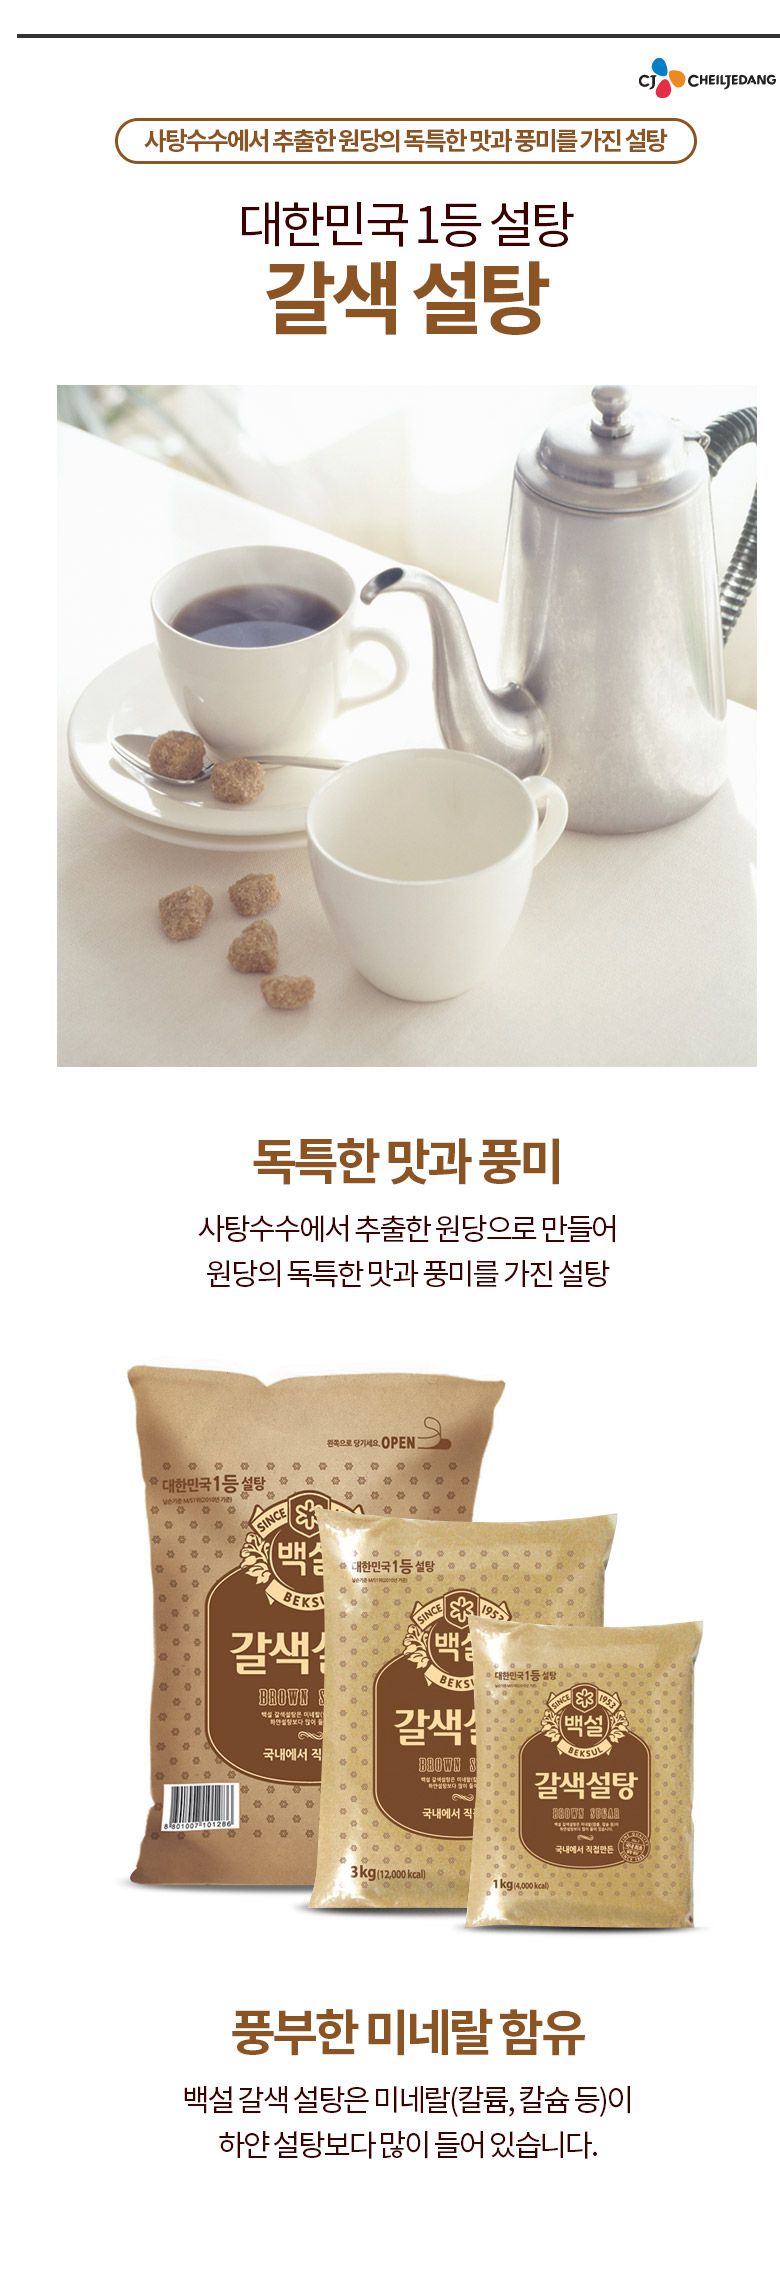 韓國食品-[CJ] 백설 갈색설탕 1kg